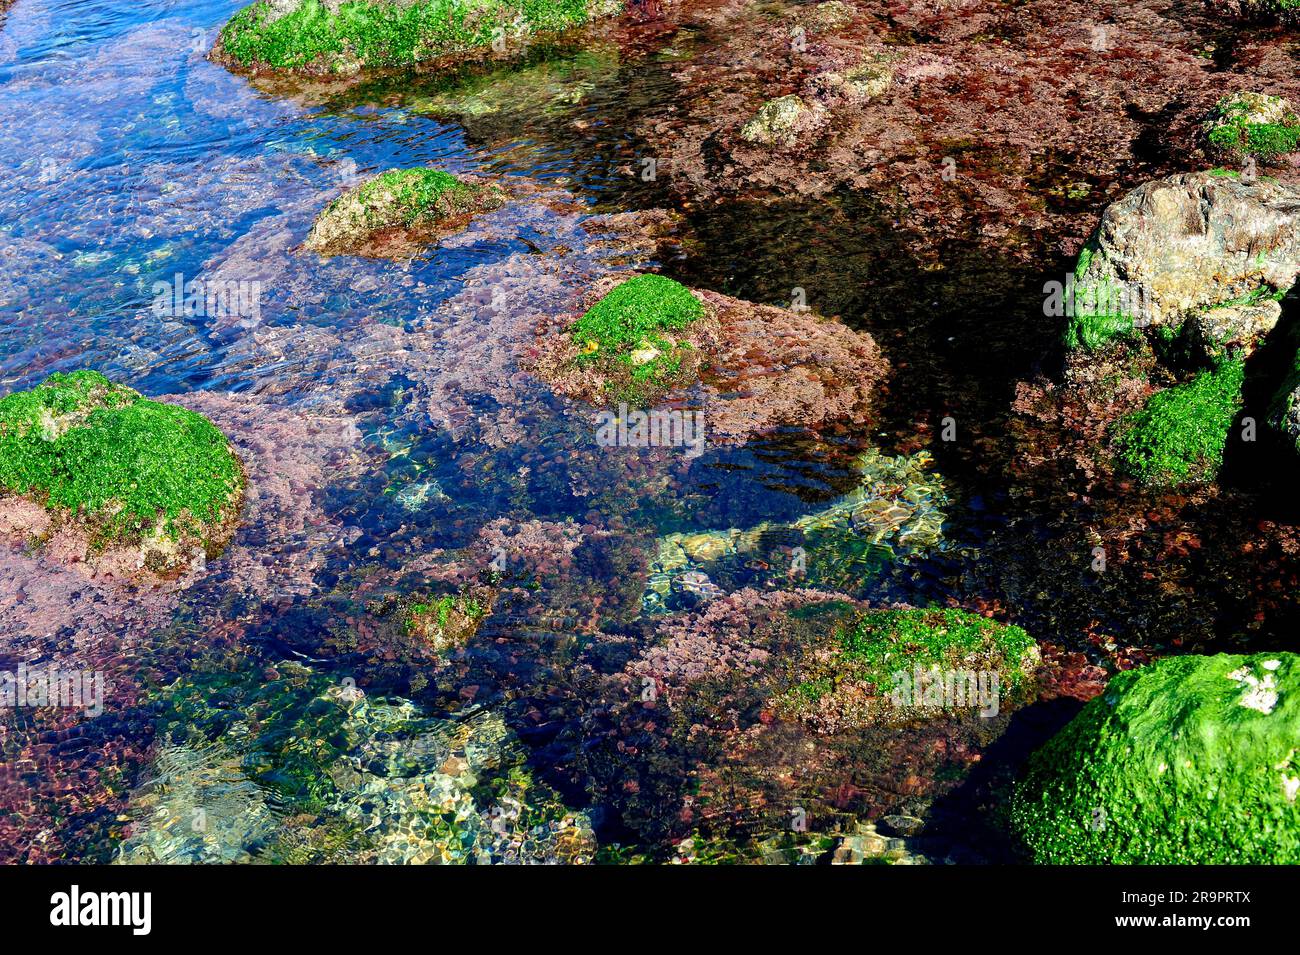 Alghe marine nella costa rocciosa con lattuga di mare (Ulva lactuca) e Corallina elongata. Costa Brava, Girona, Catalogna, Spagna. Foto Stock